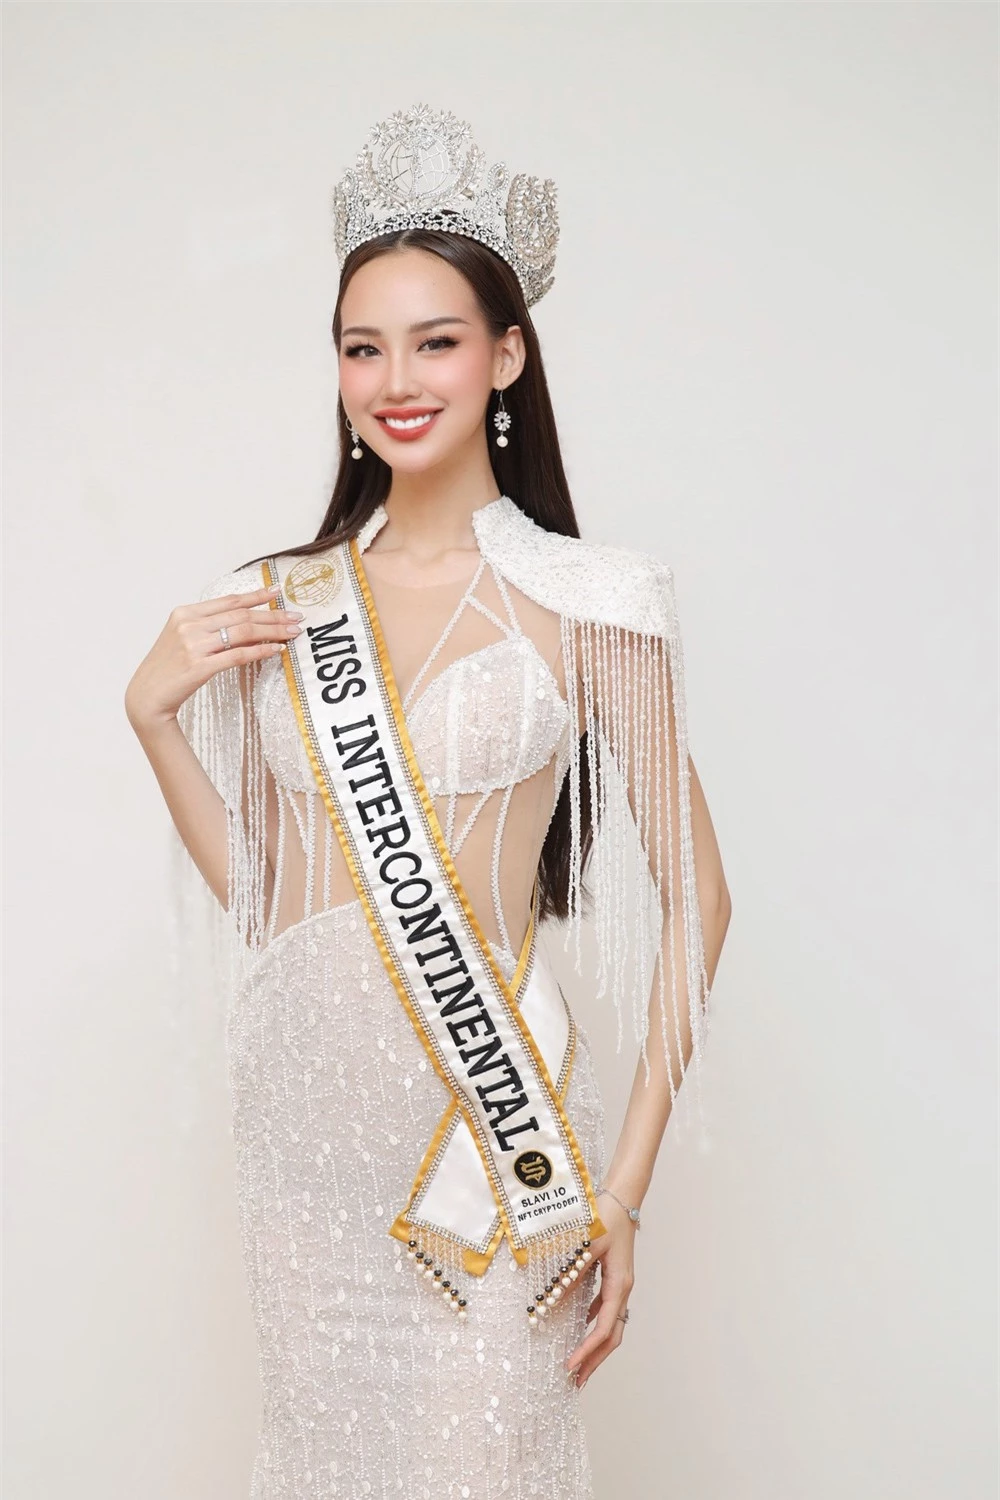 Á hậu Ngọc Hằng khoe dáng với bikini ở Hoa hậu Liên lục địa - Ảnh 3.